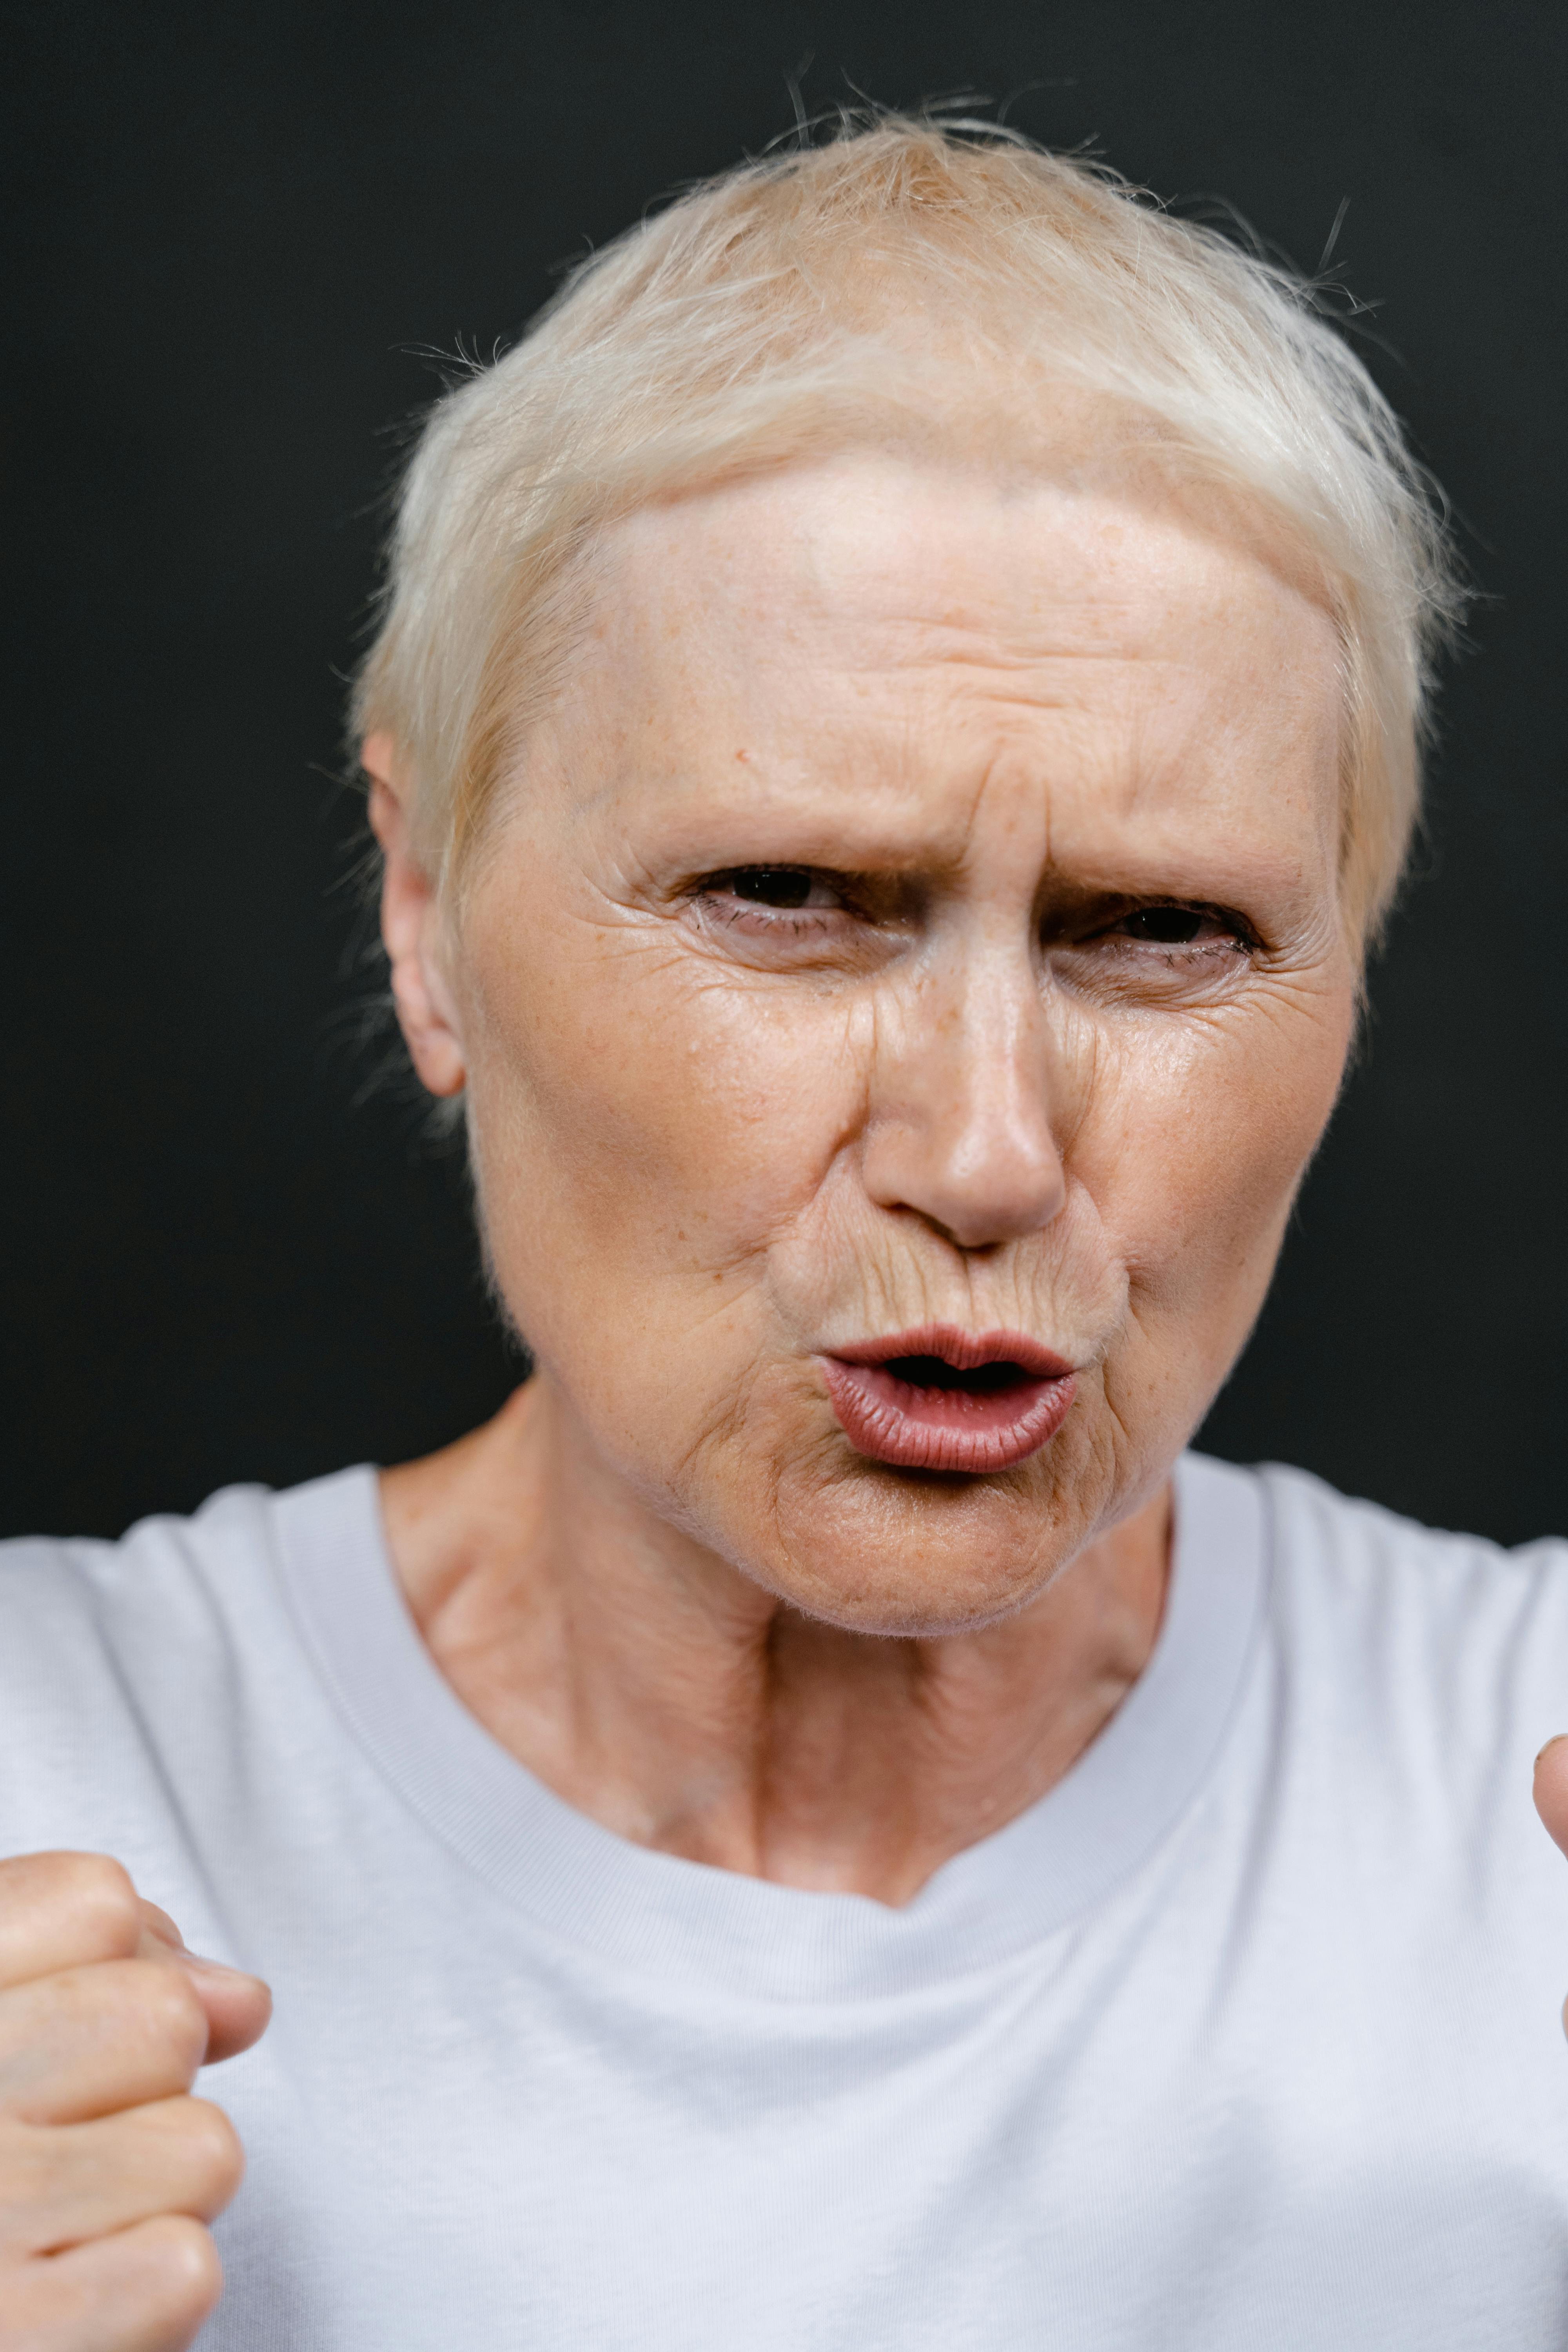 Une femme âgée en colère, les poings levés | Source : Pexels